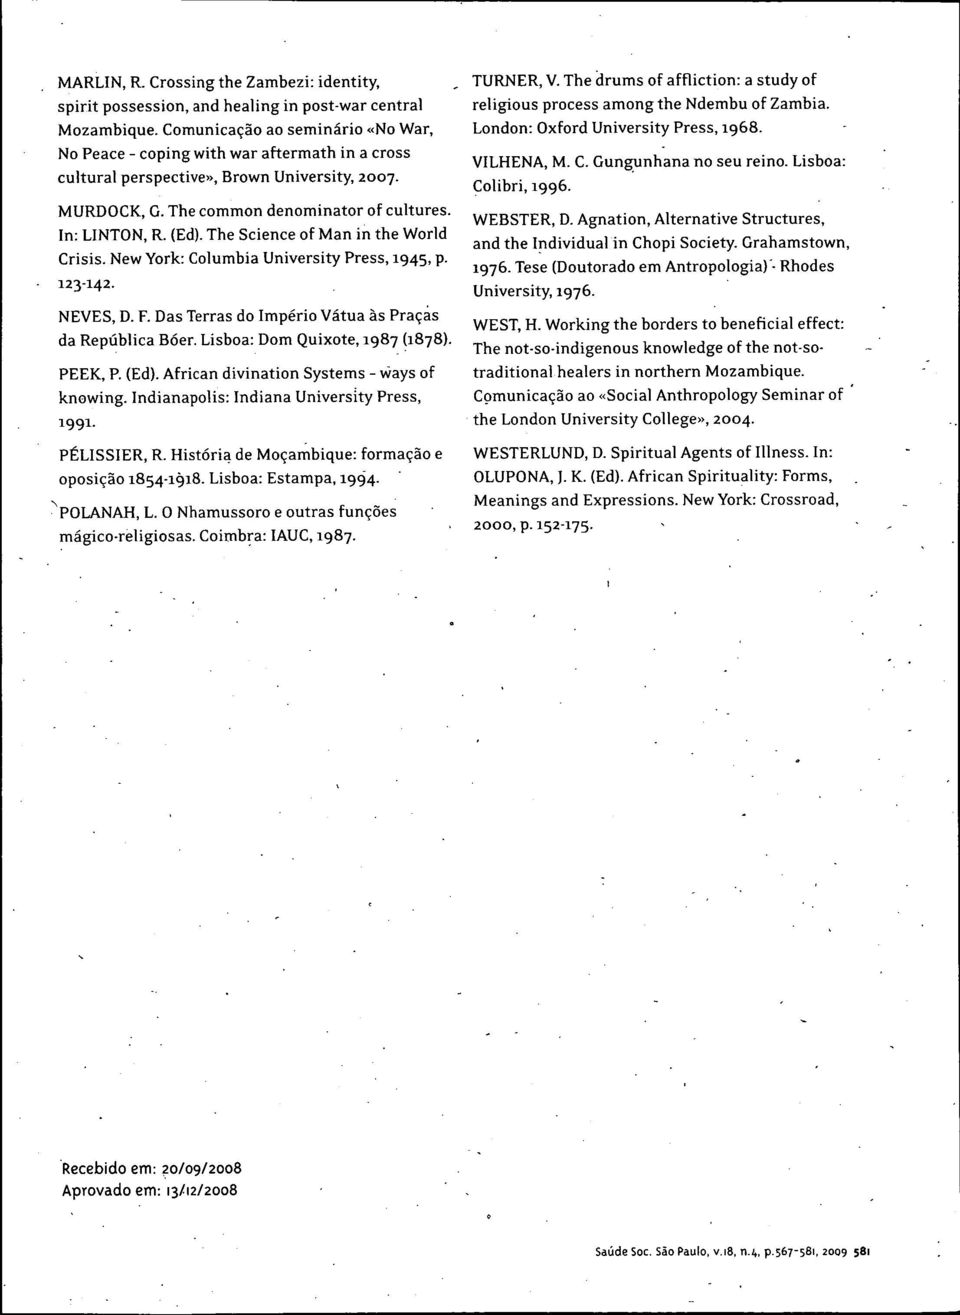 The Science of Man in the World Crisis. New York: Columbia University Press, 1945, p. 123-142. NEVES, D. F. Das Terras do Imperio Vátua as Praças da República Bóer. Lisboa: Dom Quixote, 1987 (1878).